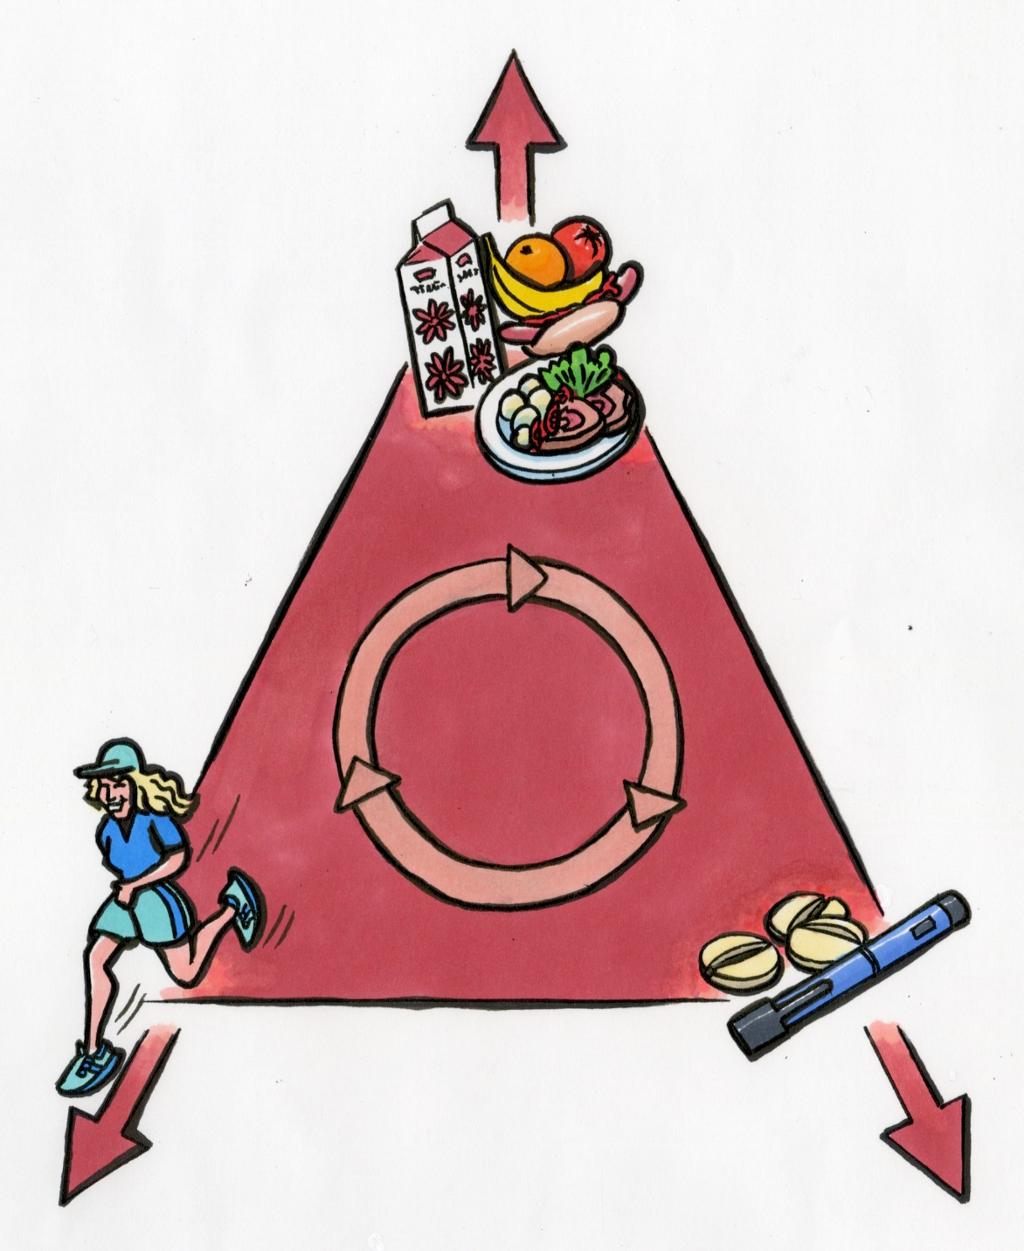 Trekant med tegninger av mat, fysisk aktivitet og insulin i hvert sitt hjørne og en sirkel i midten som viser at alt henger sammen med alt. Illustrasjon.